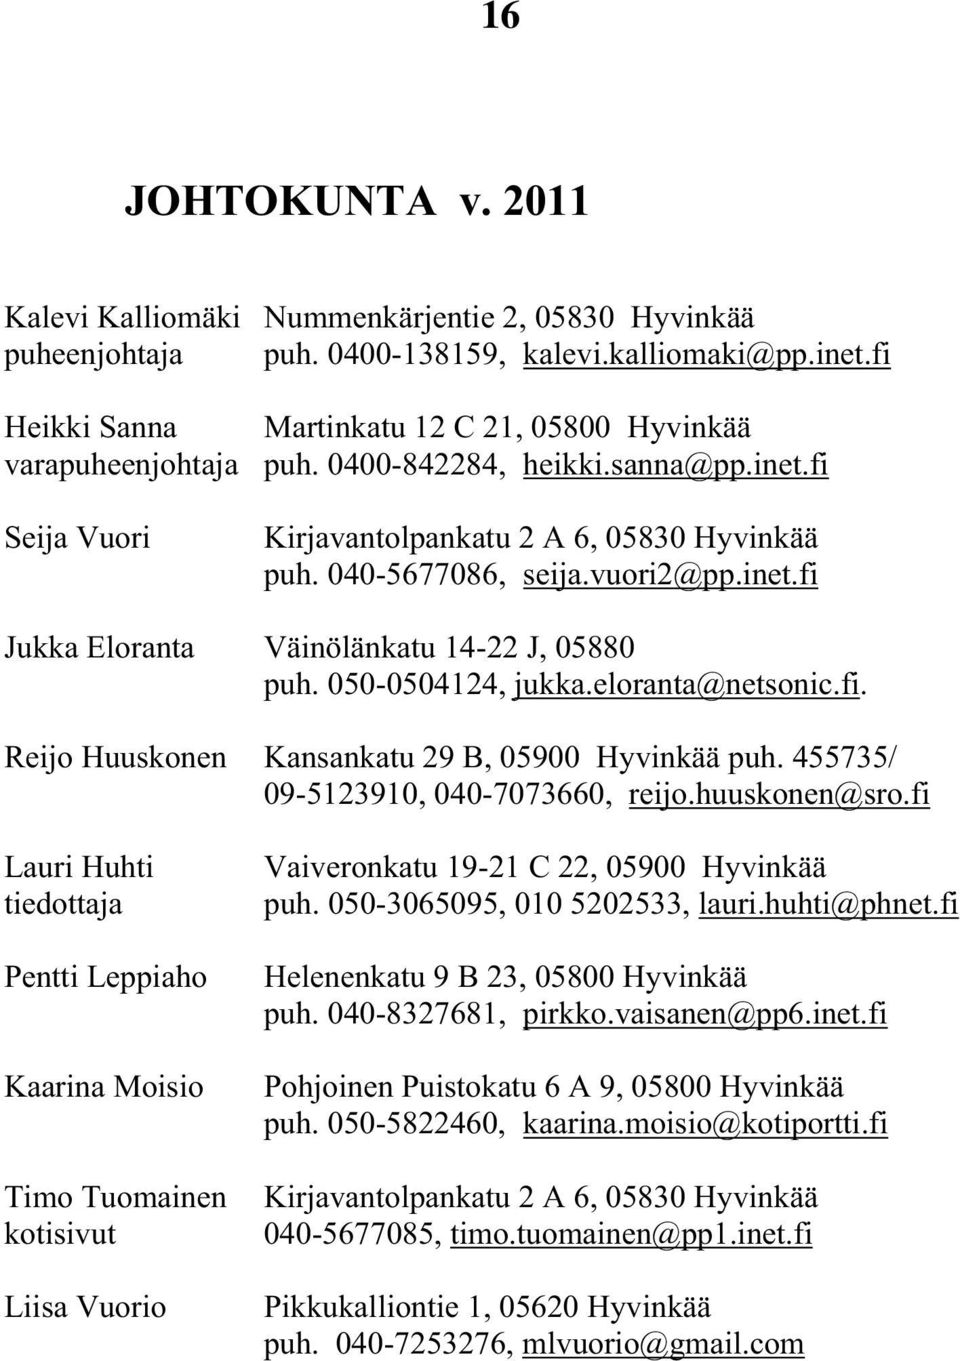 inet.fi Jukka Eloranta Väinölänkatu 14-22 J, 05880 puh. 050-0504124, jukka.eloranta@netsonic.fi. Reijo Huuskonen Kansankatu 29 B, 05900 Hyvinkää puh. 455735/ 09-5123910, 040-7073660, reijo.